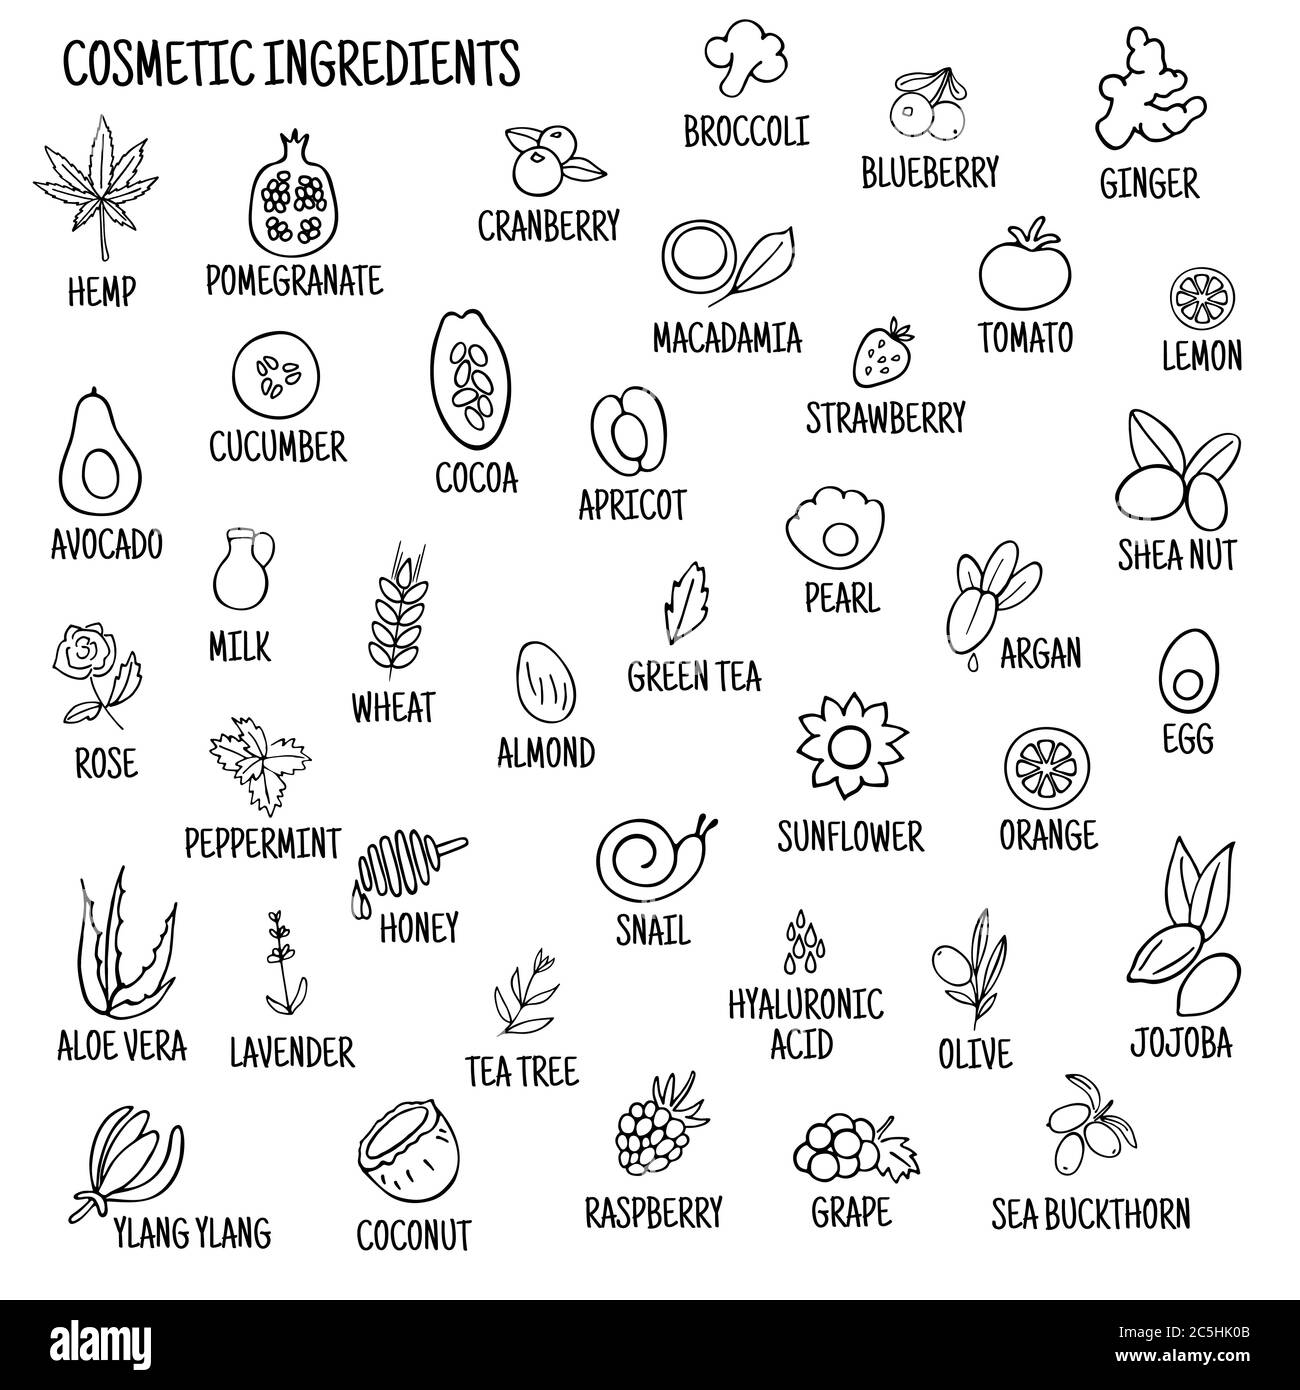 Ingredienti cosmetici. Icone disegnate a mano di erbe, frutta, verdura, fiori, oli. Raccolta di icone vettoriali. Illustrazione Vettoriale